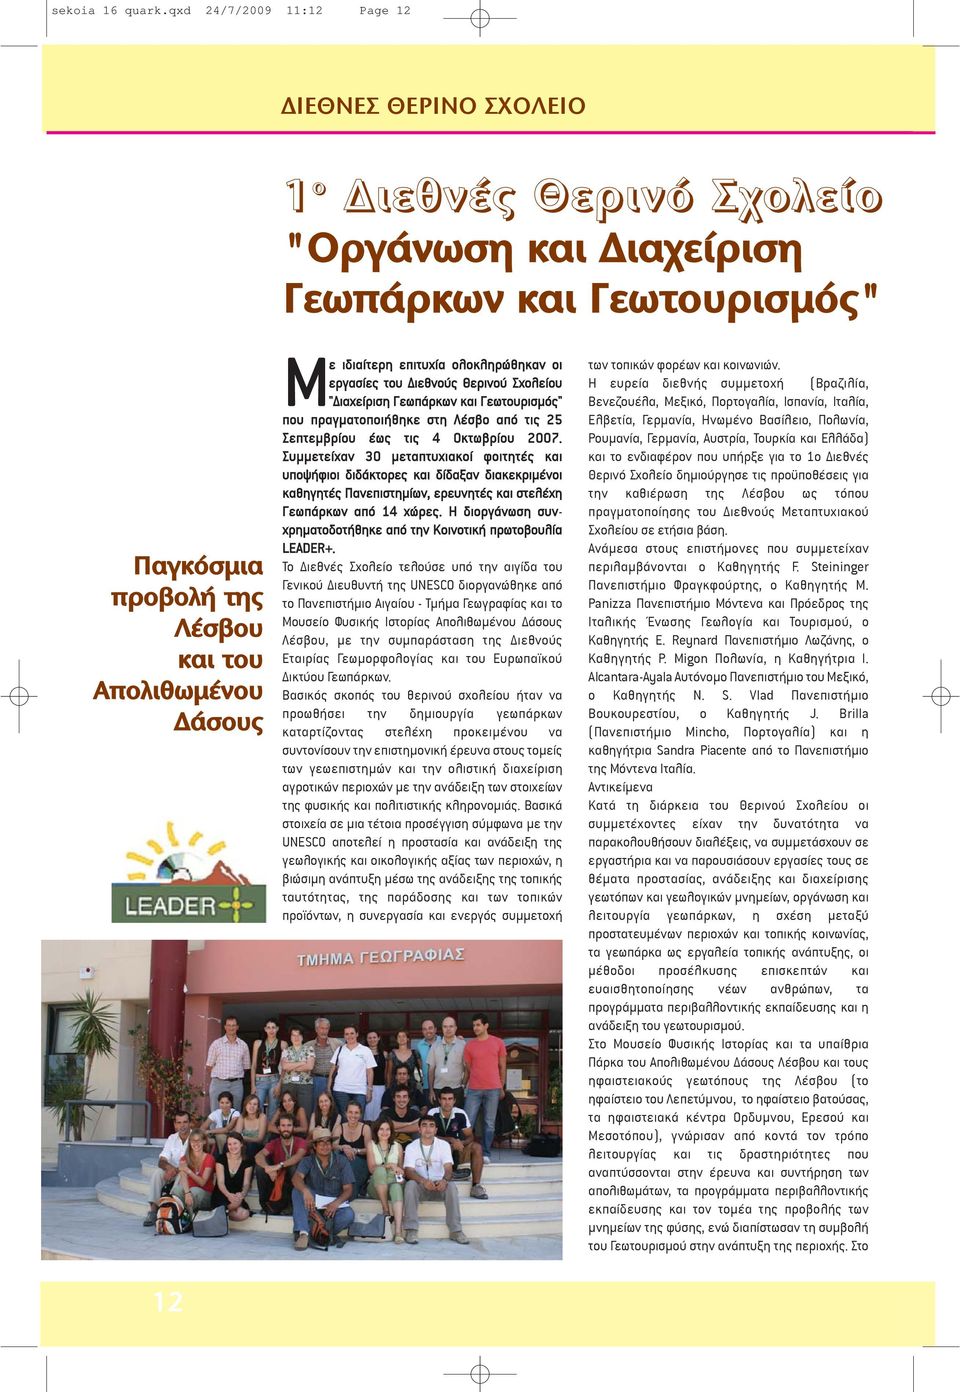 ιδιαίτερη επιτυχία ολοκληρώθηκαν οι εργασίες του Διεθνούς Θερινού Σχολείου "Διαχείριση Γεωπάρκων και Γεωτουρισμός" που πραγματοποιήθηκε στη Λέσβο από τις 25 Σεπτεμβρίου έως τις 4 Οκτωβρίου 2007.